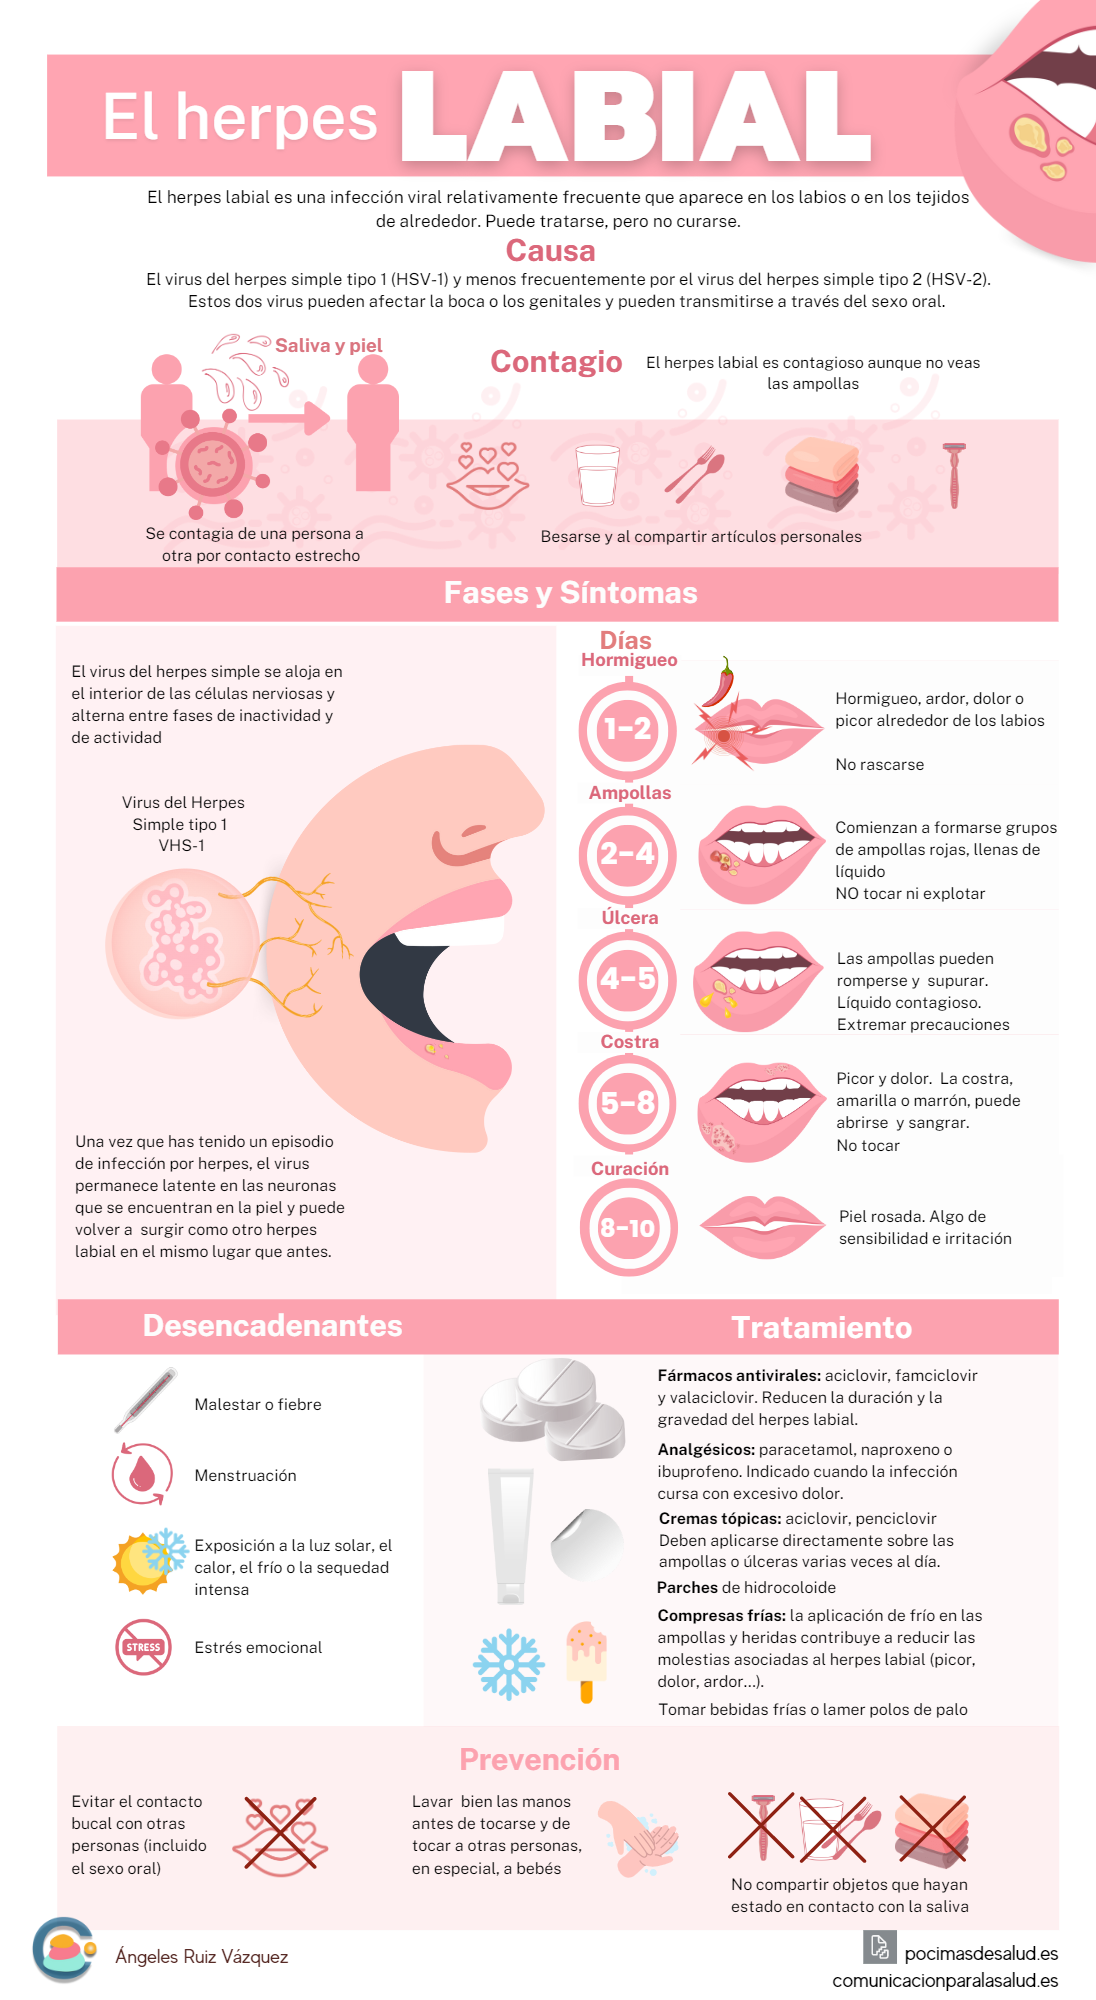 nfografía completa del herpes labial: qué es, cómo se contagia, fases y síntomas, factores desencadenantes, tratamiento y prevención